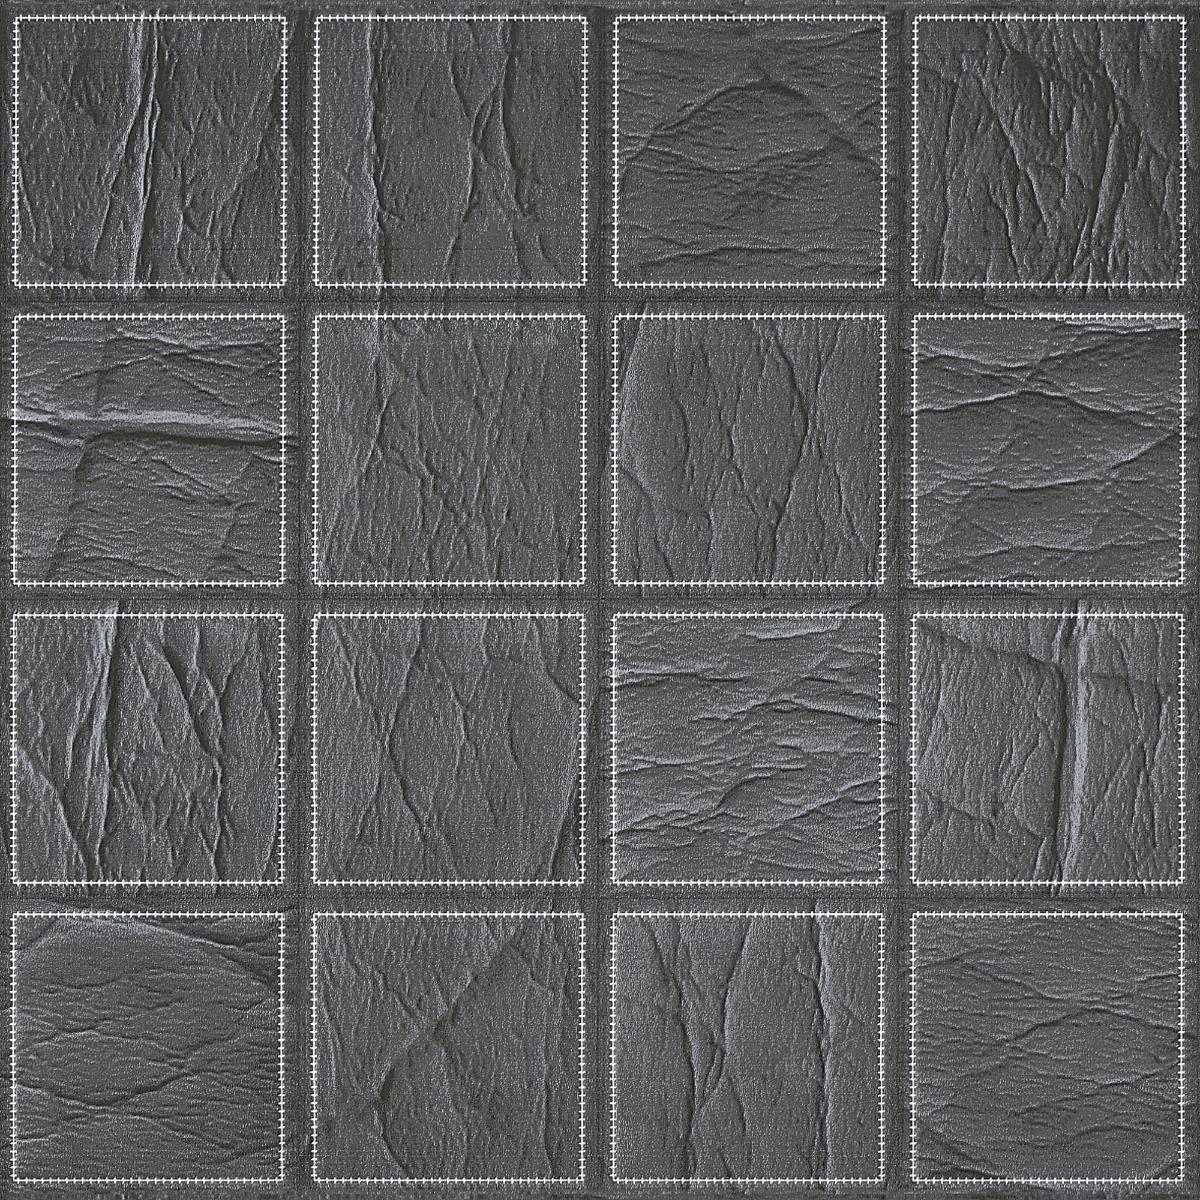 Ceramic Tiles for Bathroom Tiles, Kitchen Tiles, Balcony Tiles